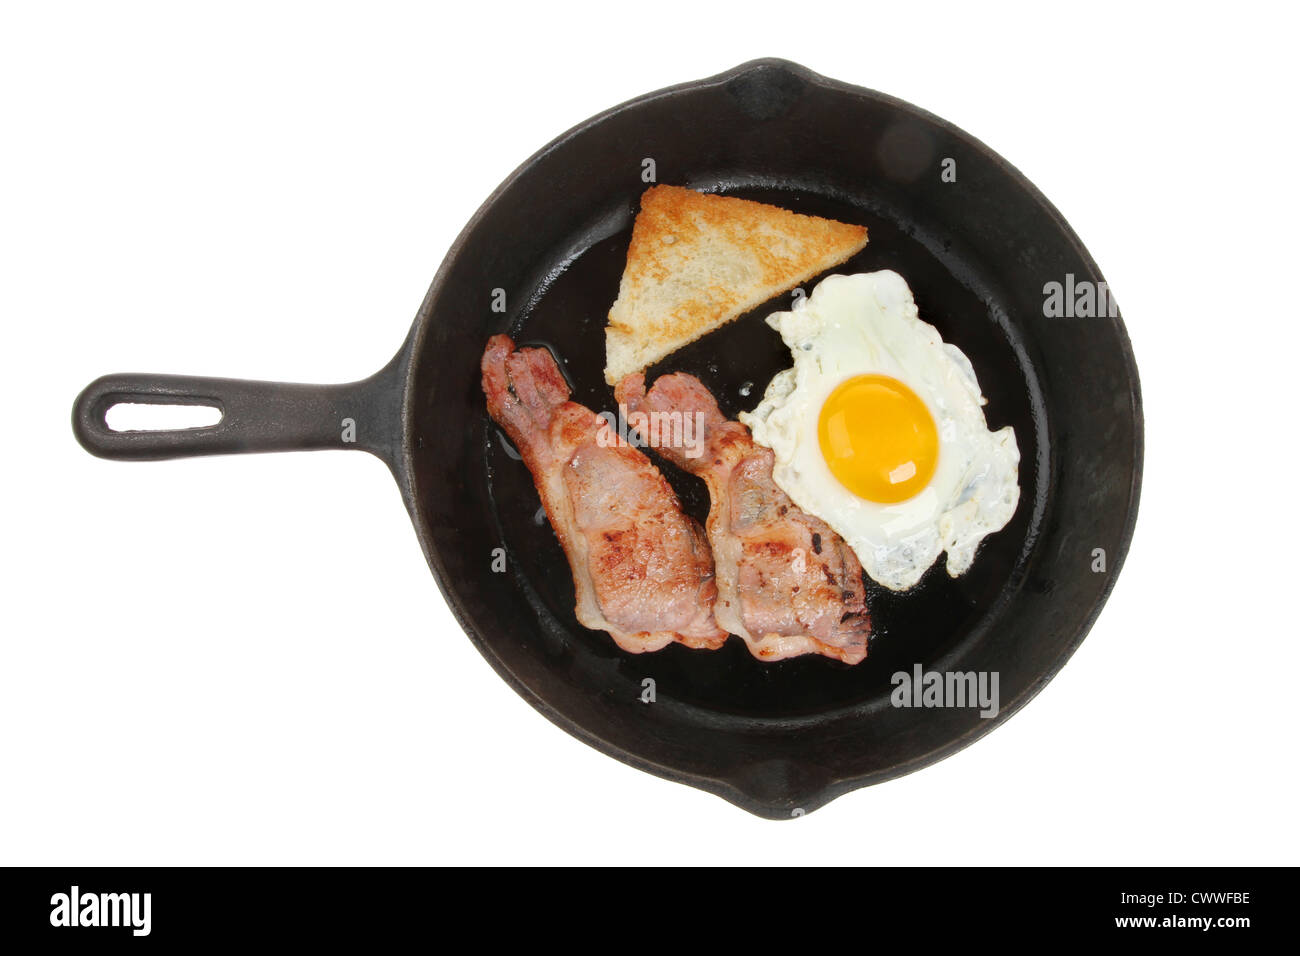 Personne petit-déjeuner frit d'œufs, bacon et pain frit dans une casserole isolés contre white Banque D'Images